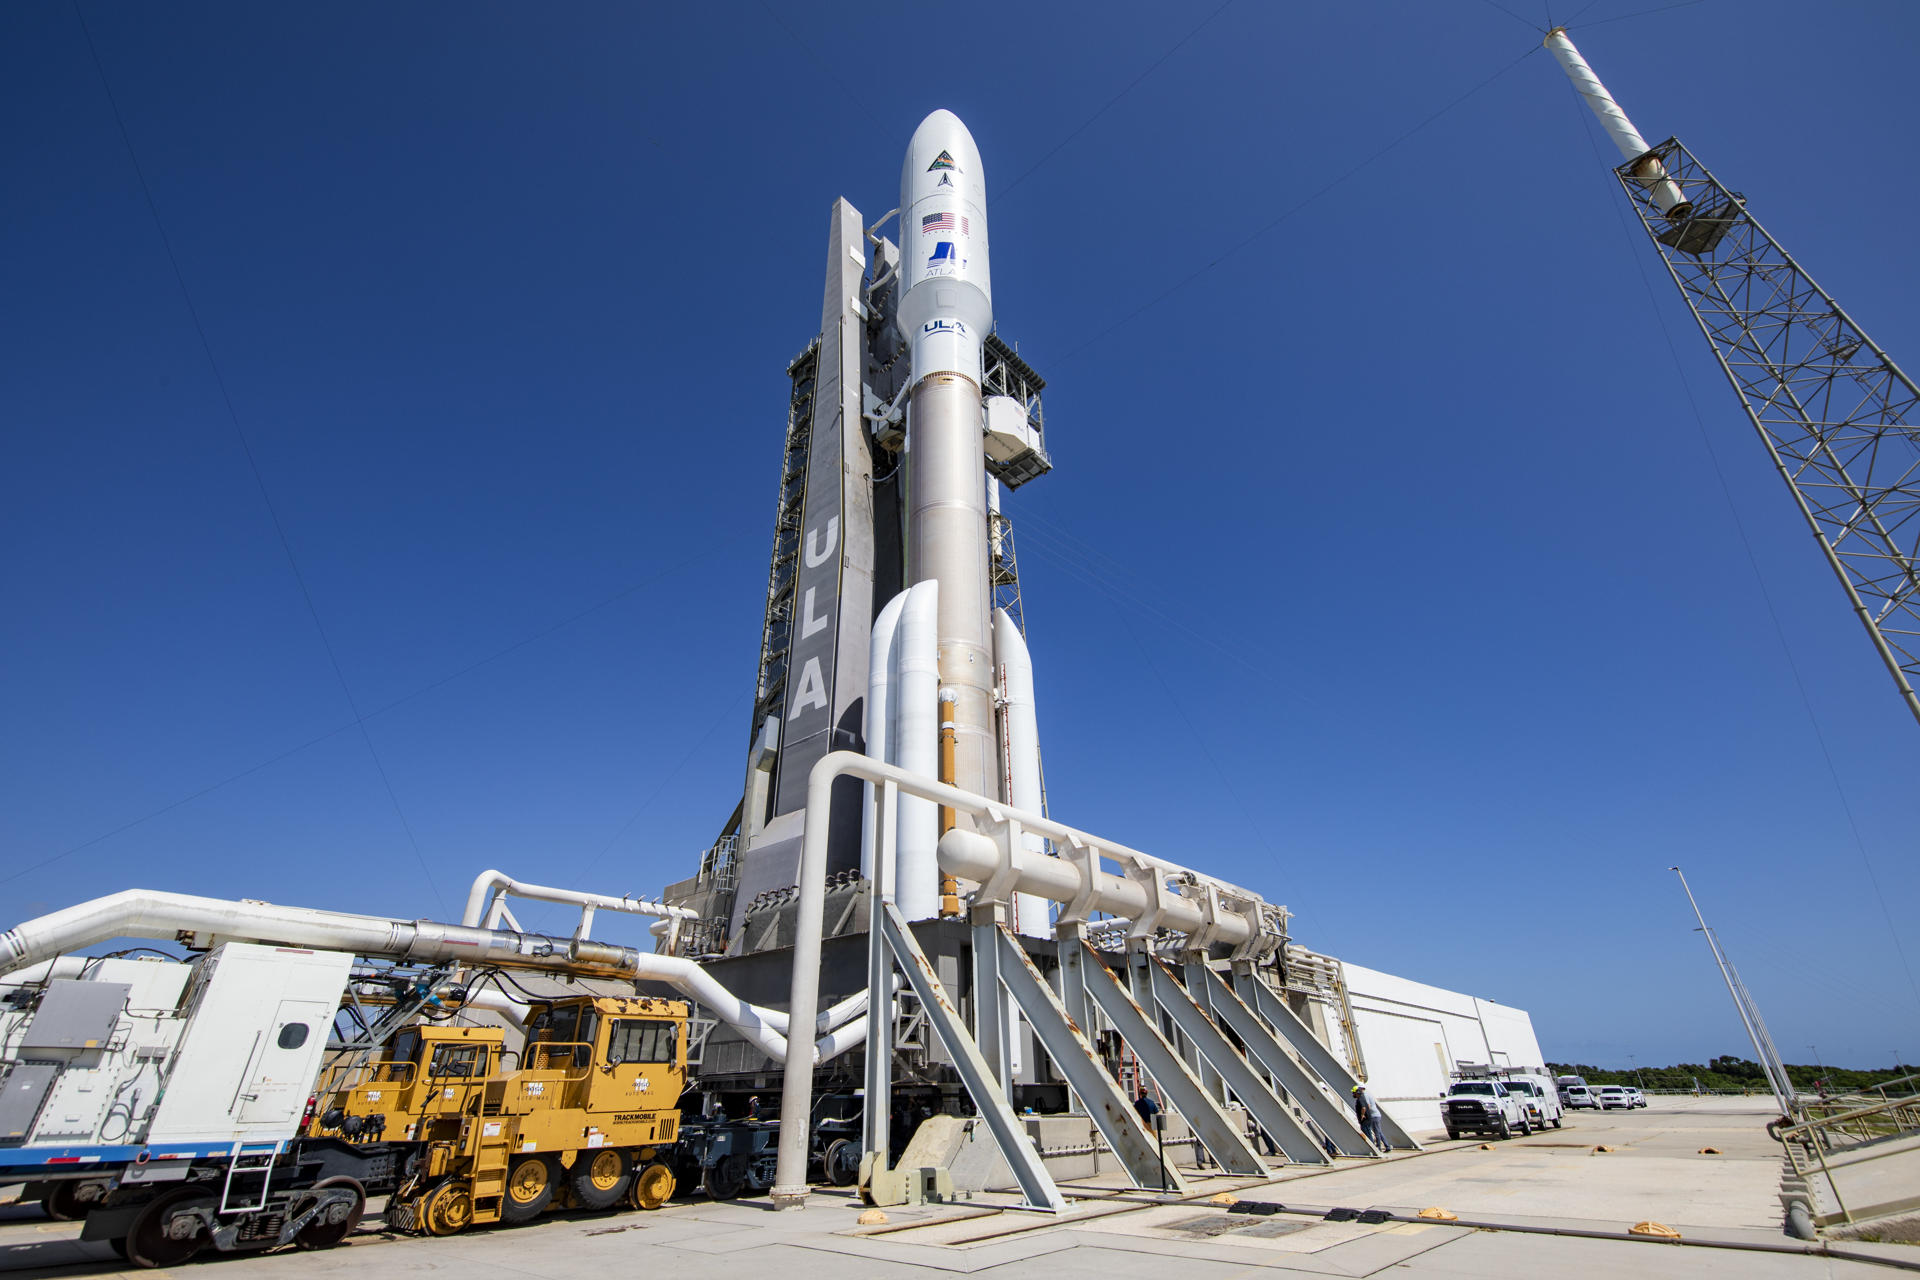 Fotografía cedida por United Launch Alliance (ULA) donde se muestra su cohete Atlas V que lleva la misión Silent Barker/NROL-107 para la Oficina Nacional de Reconocimiento (NRO) y la Fuerza Espacial de los Estados Unidos mientras es transportado hasta la plataforma de lanzamiento en el Complejo de Lanzamiento Espacial-41 de la Estación de la Fuerza Espacial en Cabo Cañaveral, Florida. EFE/ULA /SOLO USO EDITORIAL /NO VENTAS /SOLO DISPONIBLE PARA ILUSTRAR LA NOTICIA QUE ACOMPAÑA /CRÉDITO OBLIGATORIO
